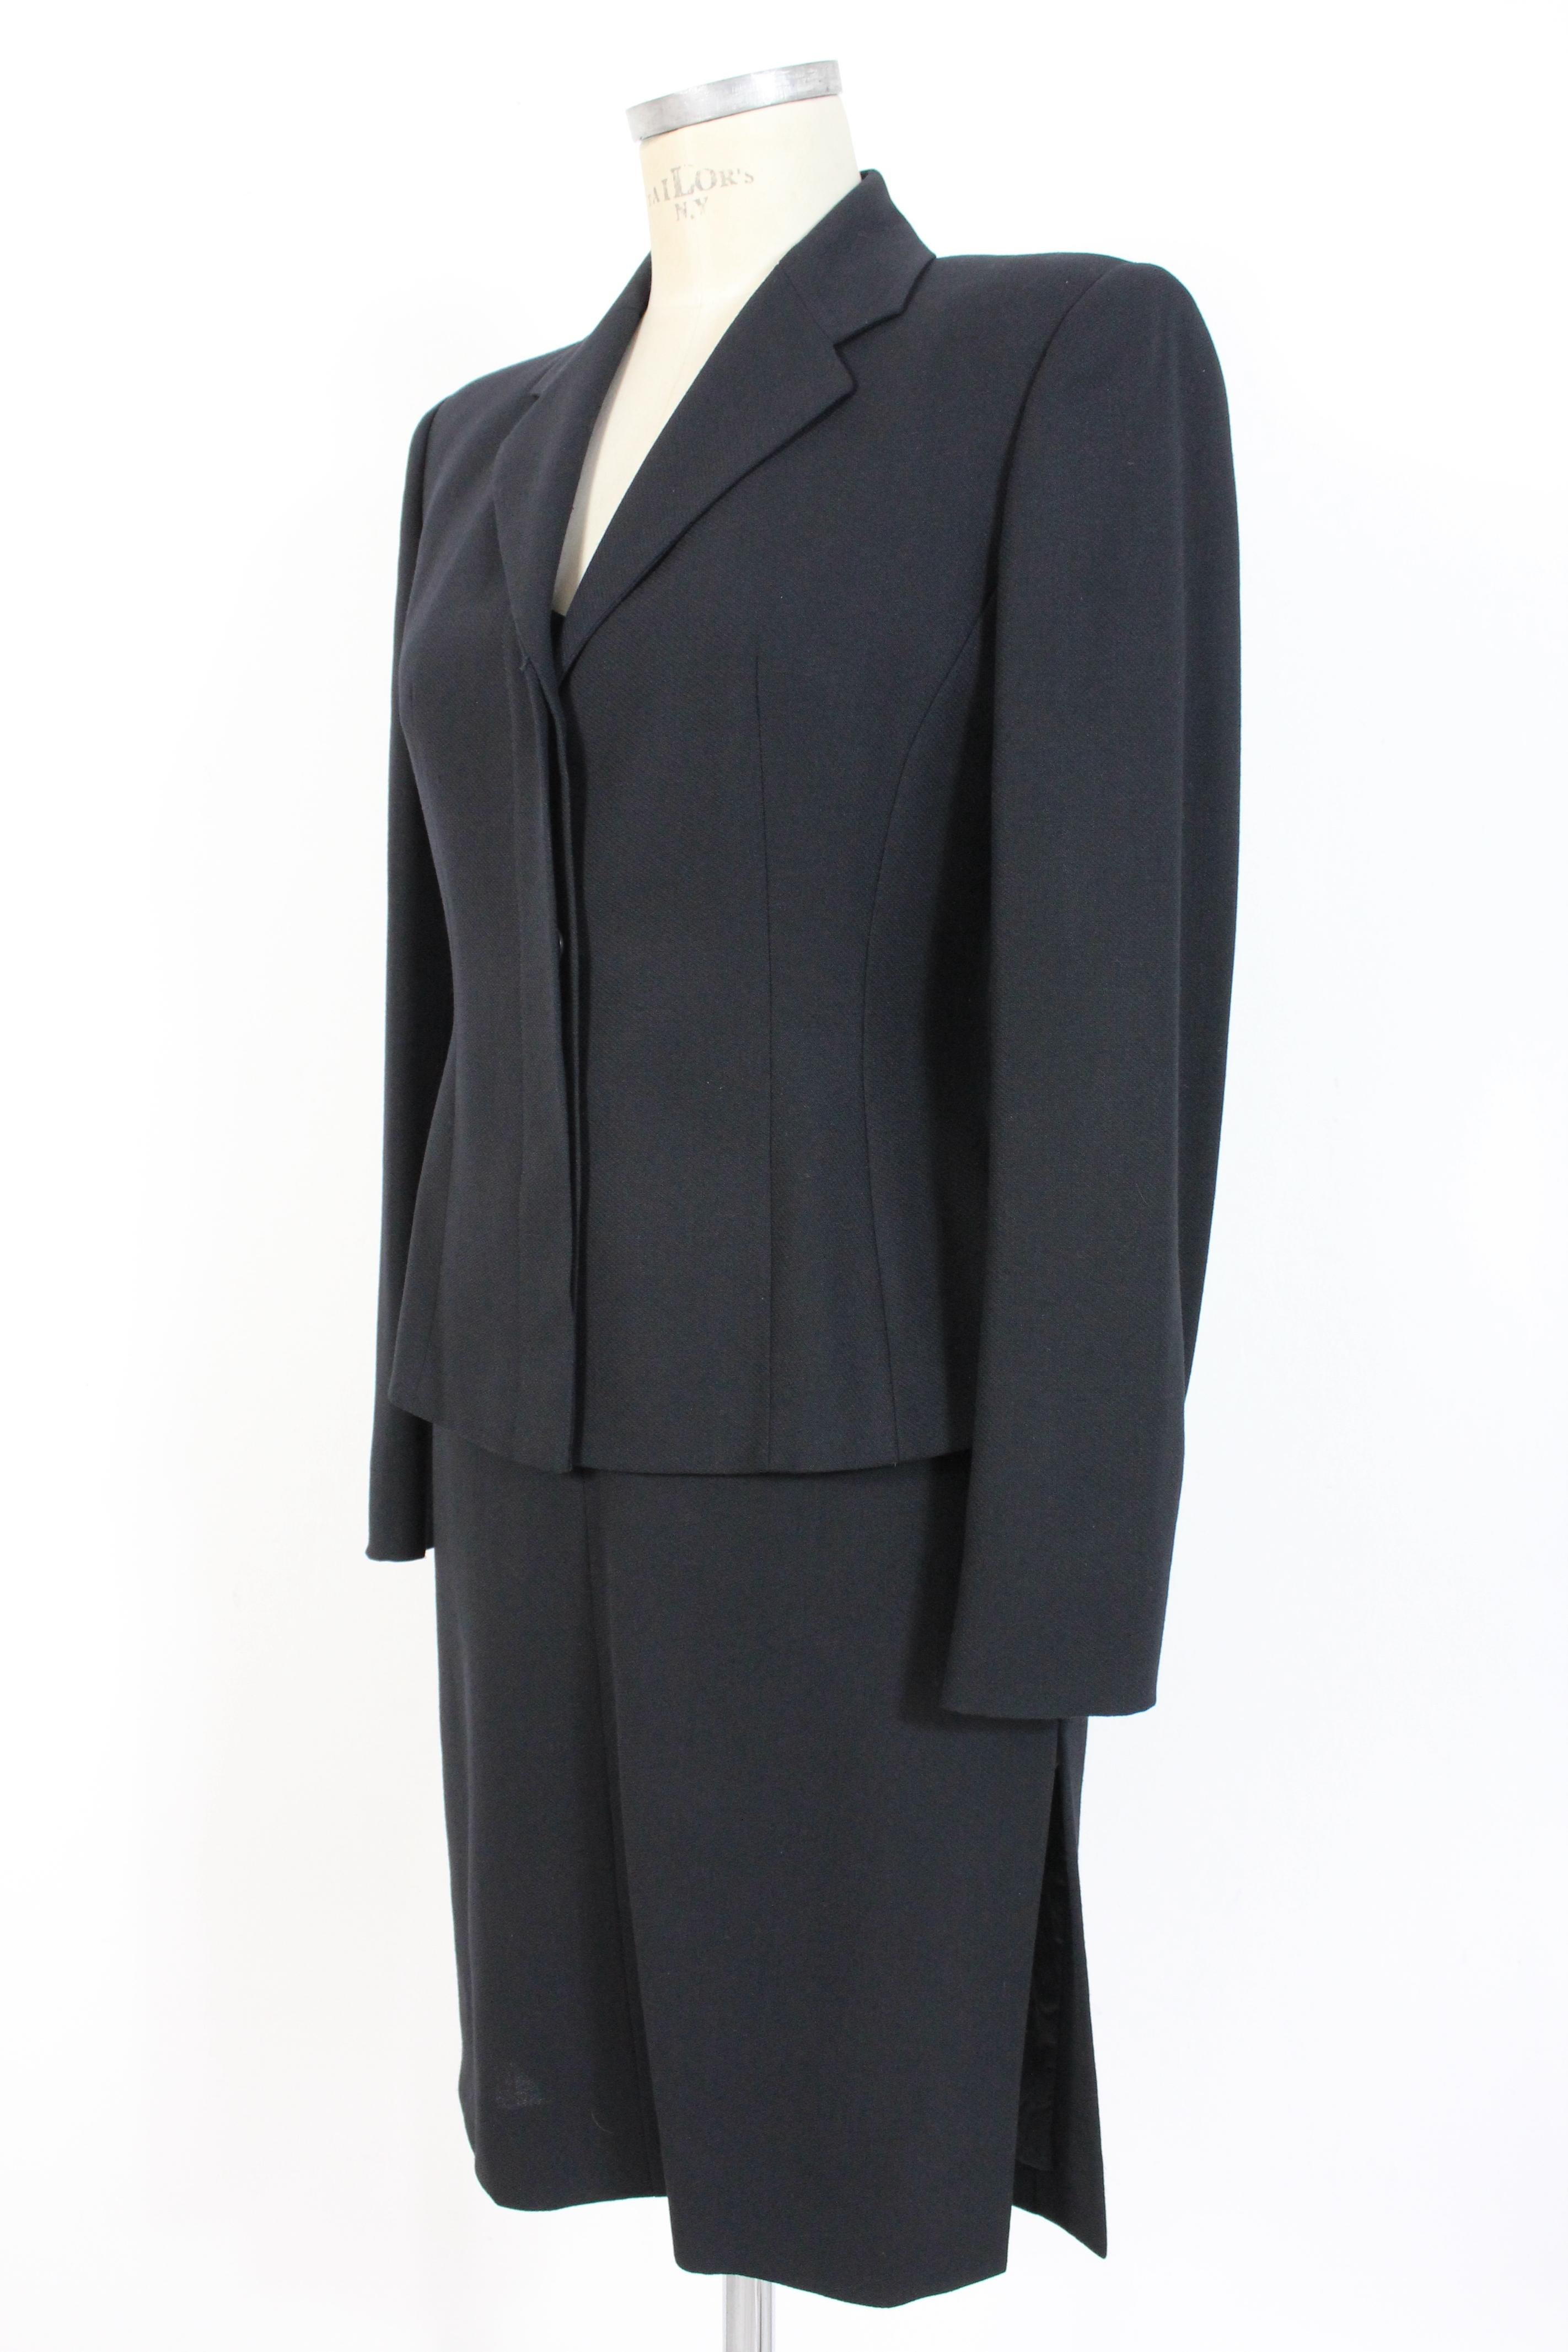 Women's Gianfranco Ferre Black Wool Evening Suit Dress